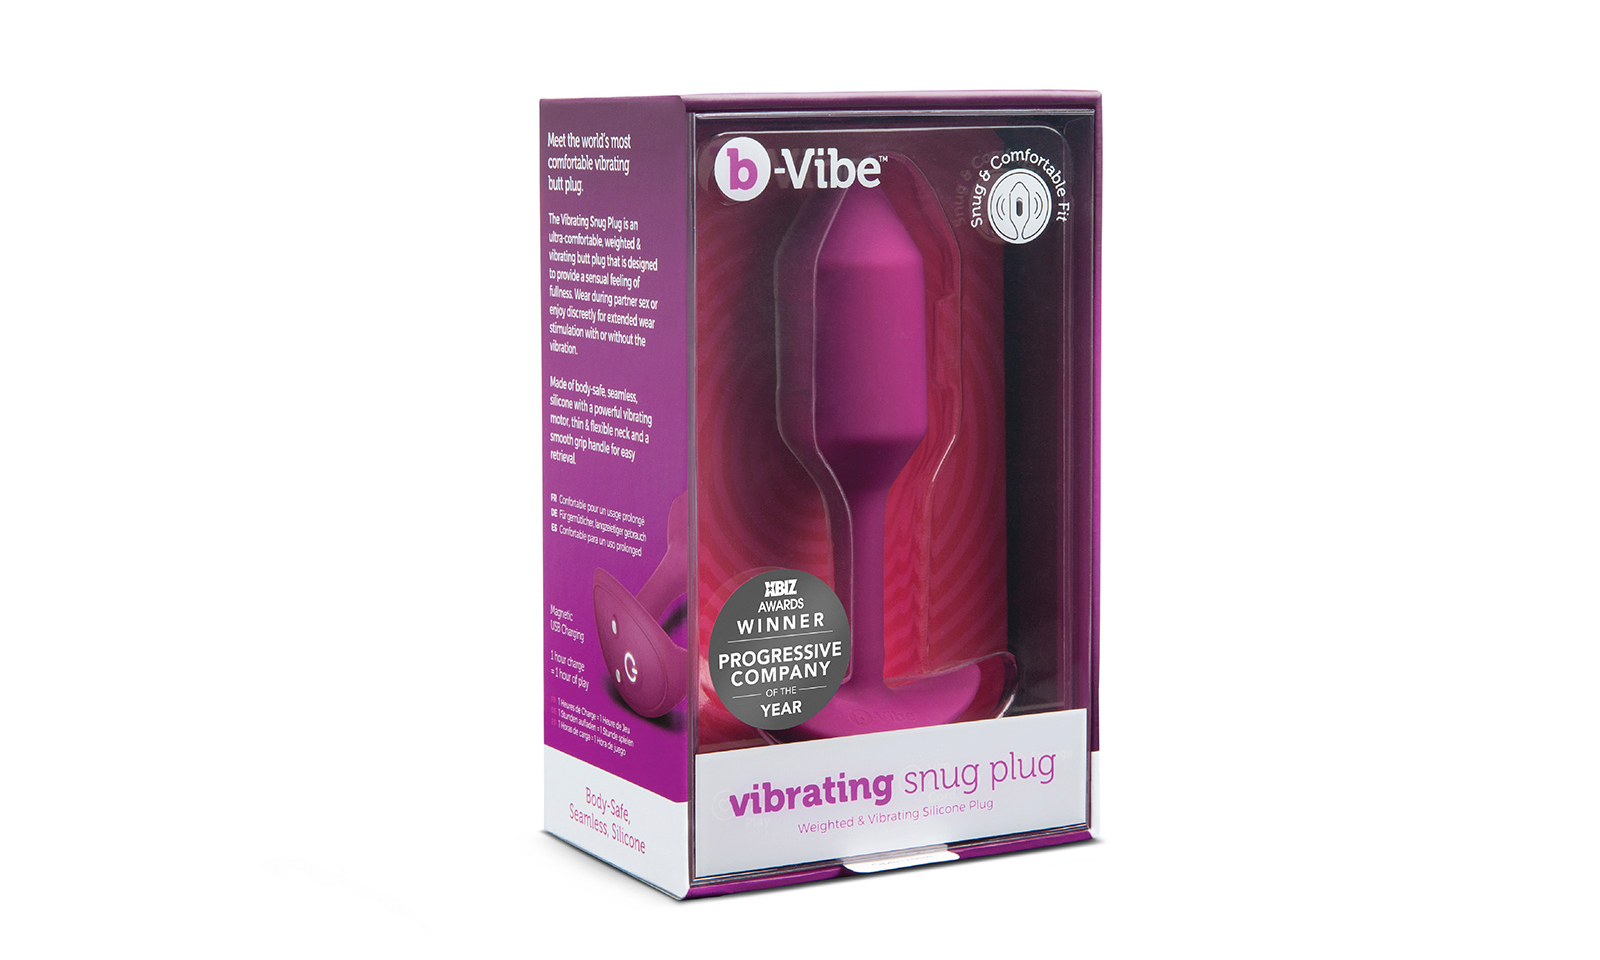 Entrenue Shipping b-Vibe’s Vibrating Snug Plugs